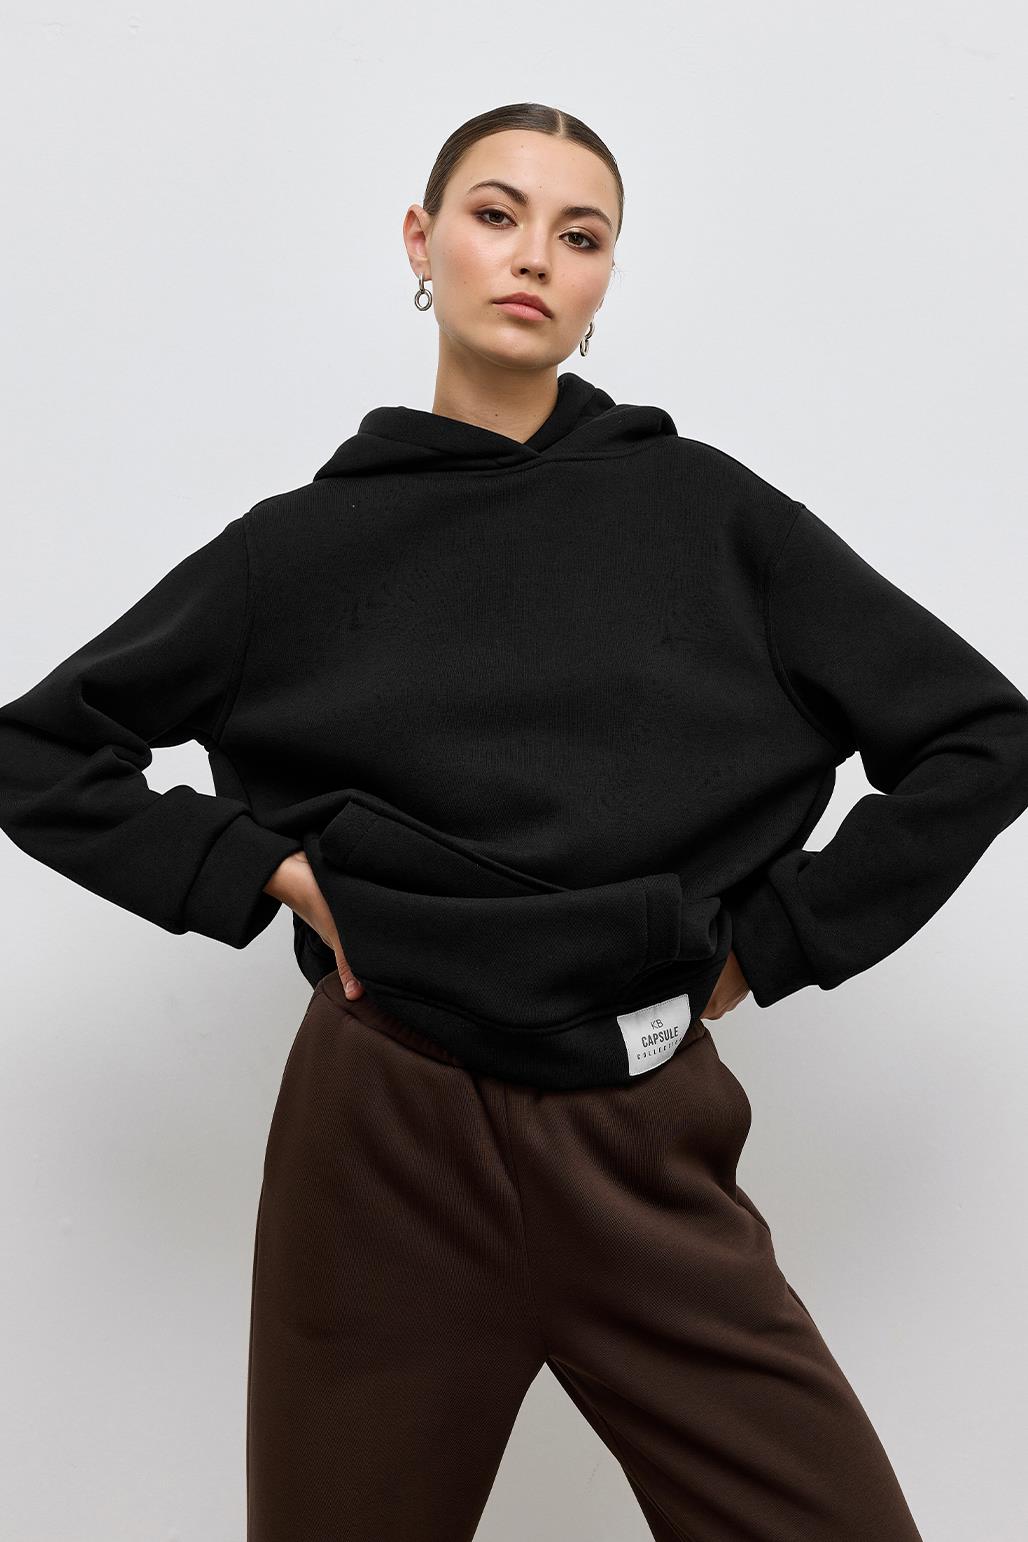 Fleece Hooded Sweatshirt With Pocket Black